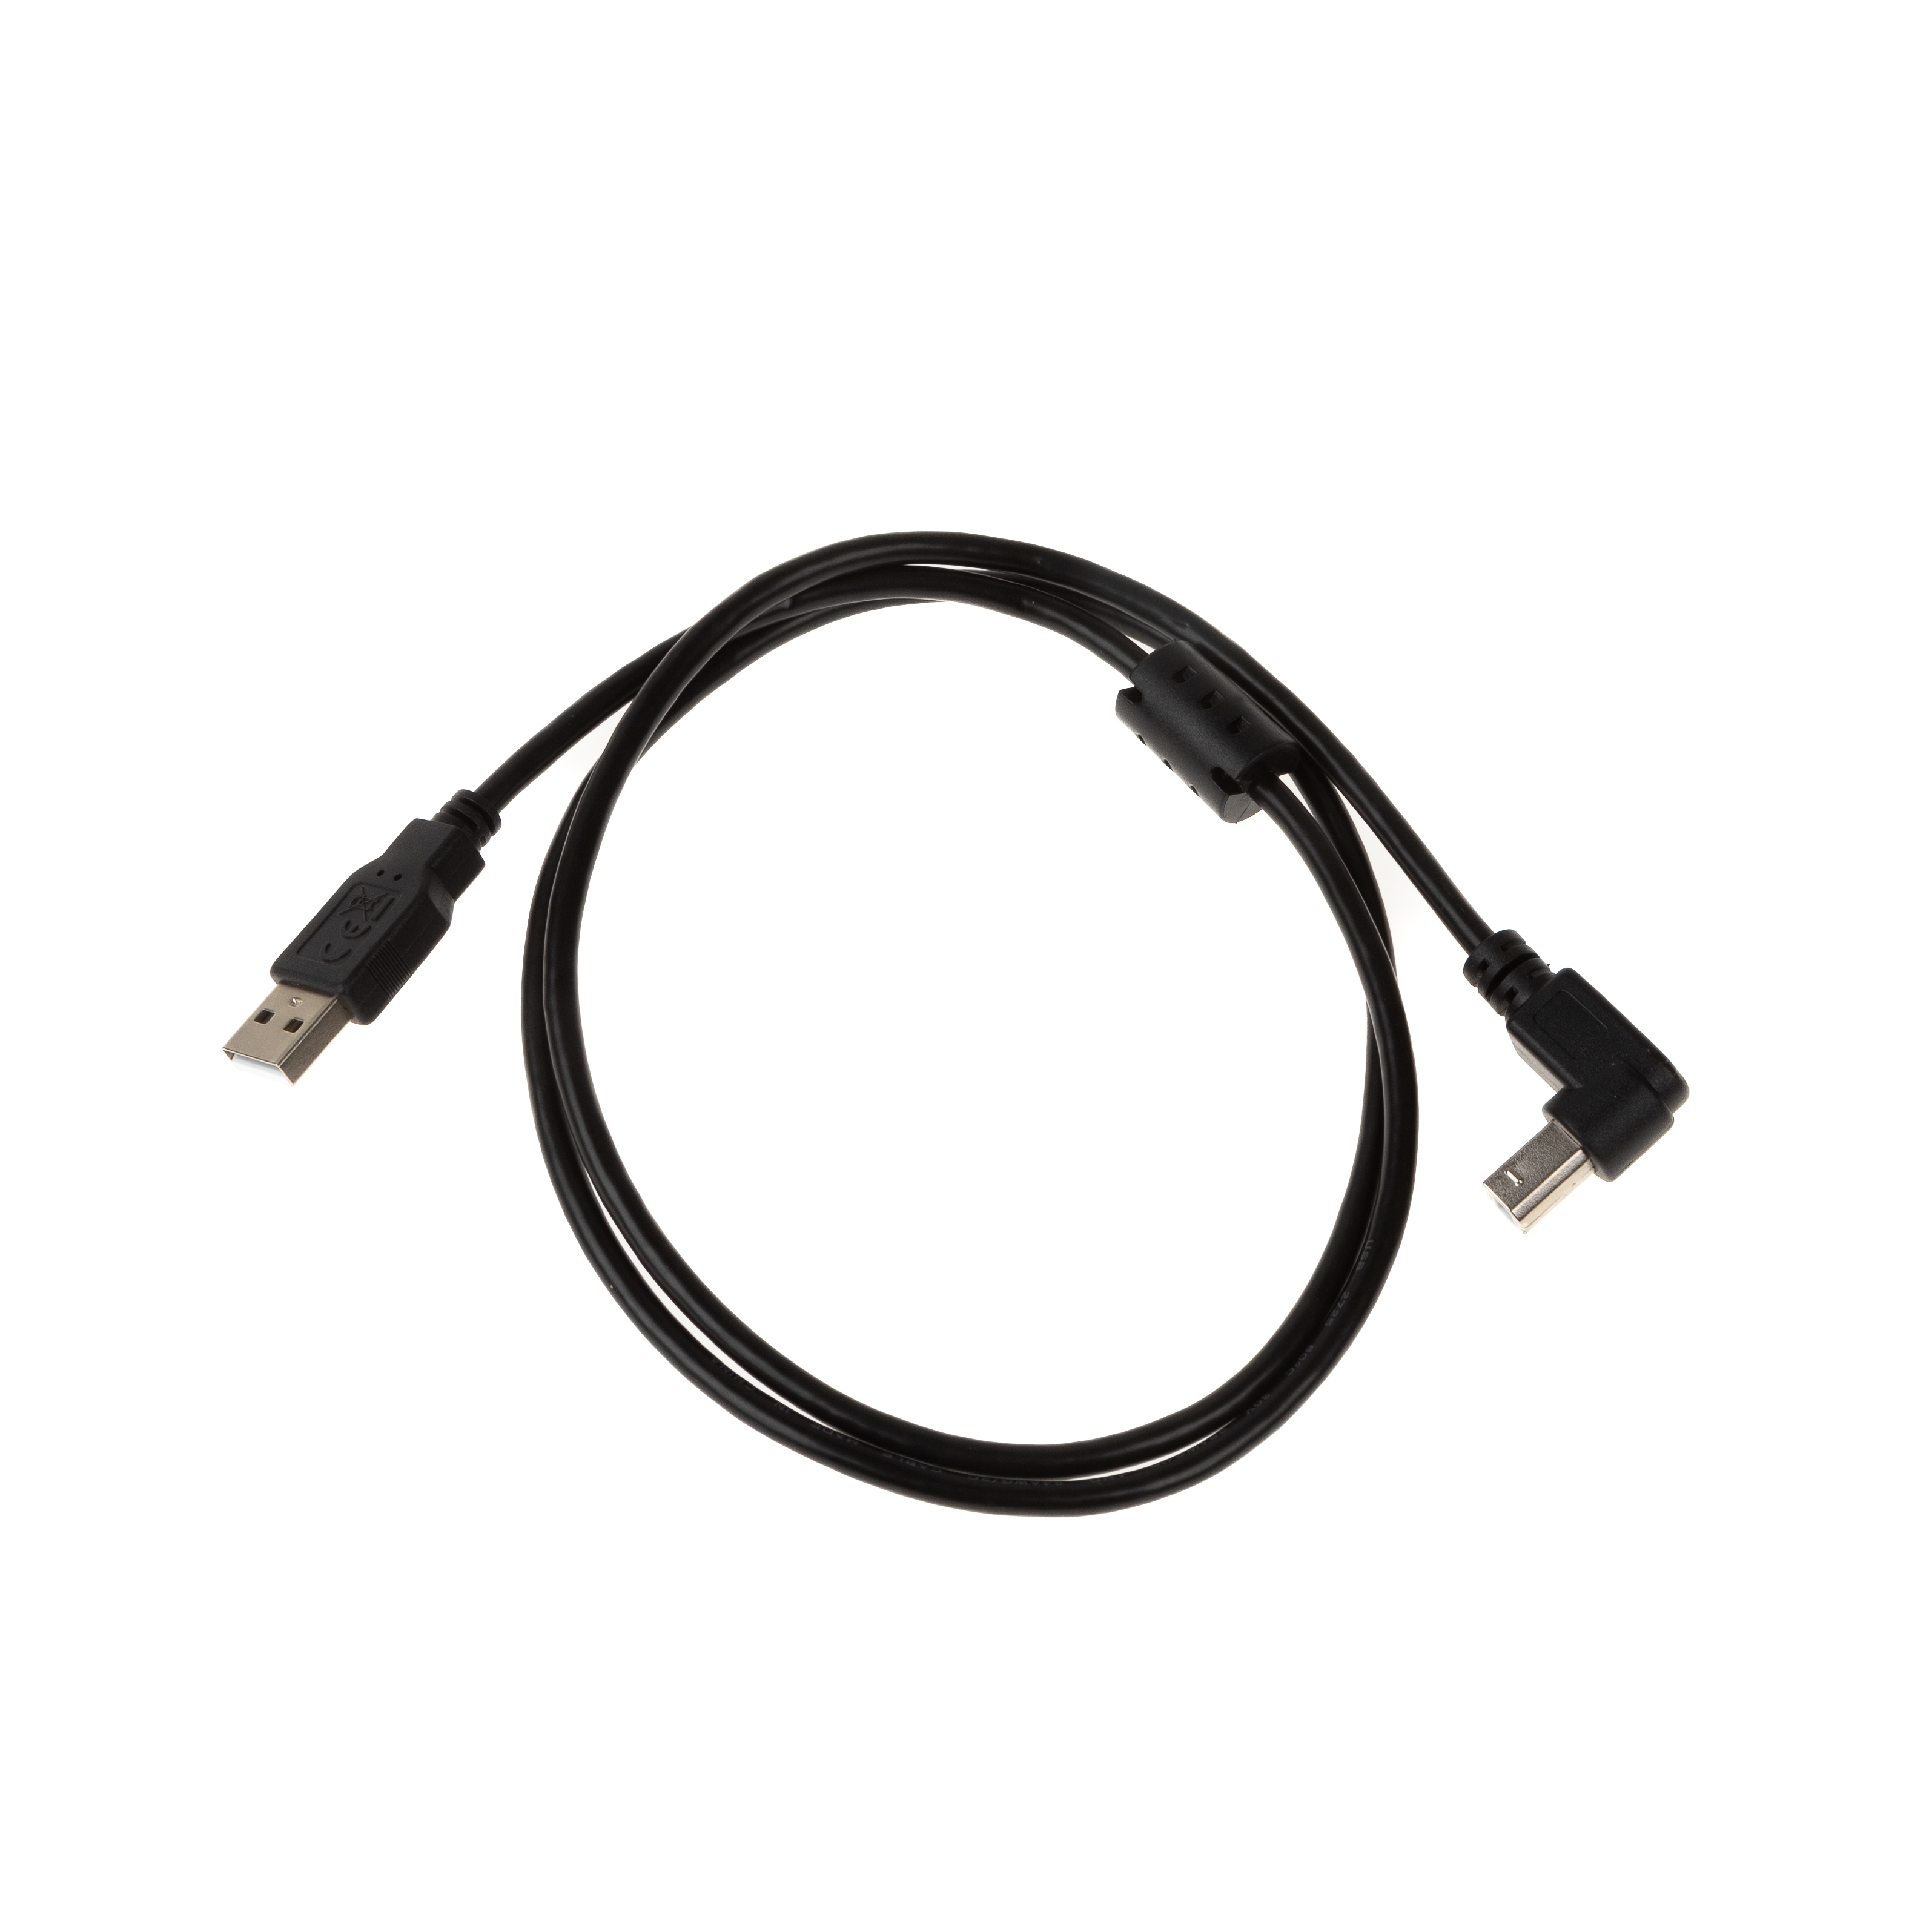 Câble USB 2.0 avec connecteur B coudé 90° VERS LE BAS, noyau de ferrite, 1m